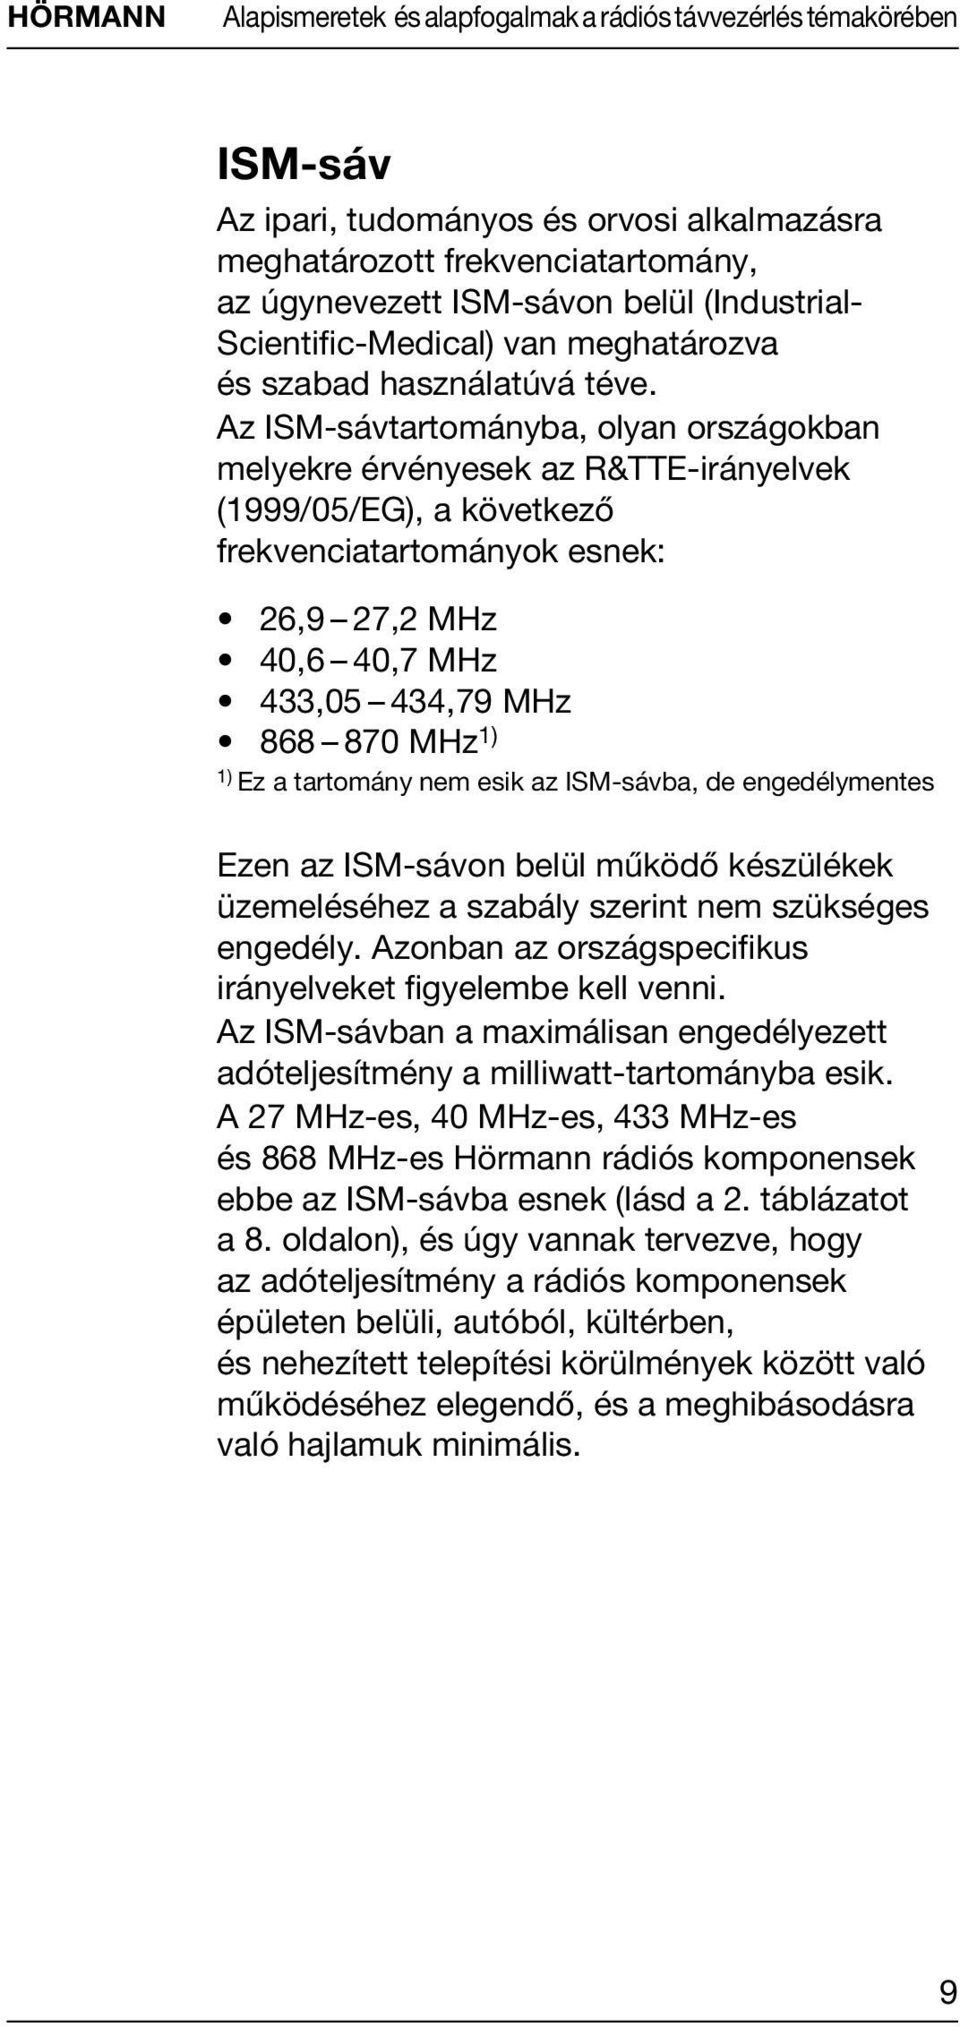 Az ISM-sávtartományba, olyan országokban melyekre érvényesek az R&TTE-irányelvek (1999/05/EG), a következő frekvenciatartományok esnek: 26,9 27,2 MHz 40,6 40,7 MHz 433,05 434,79 MHz 868 870 MHz1) 1)